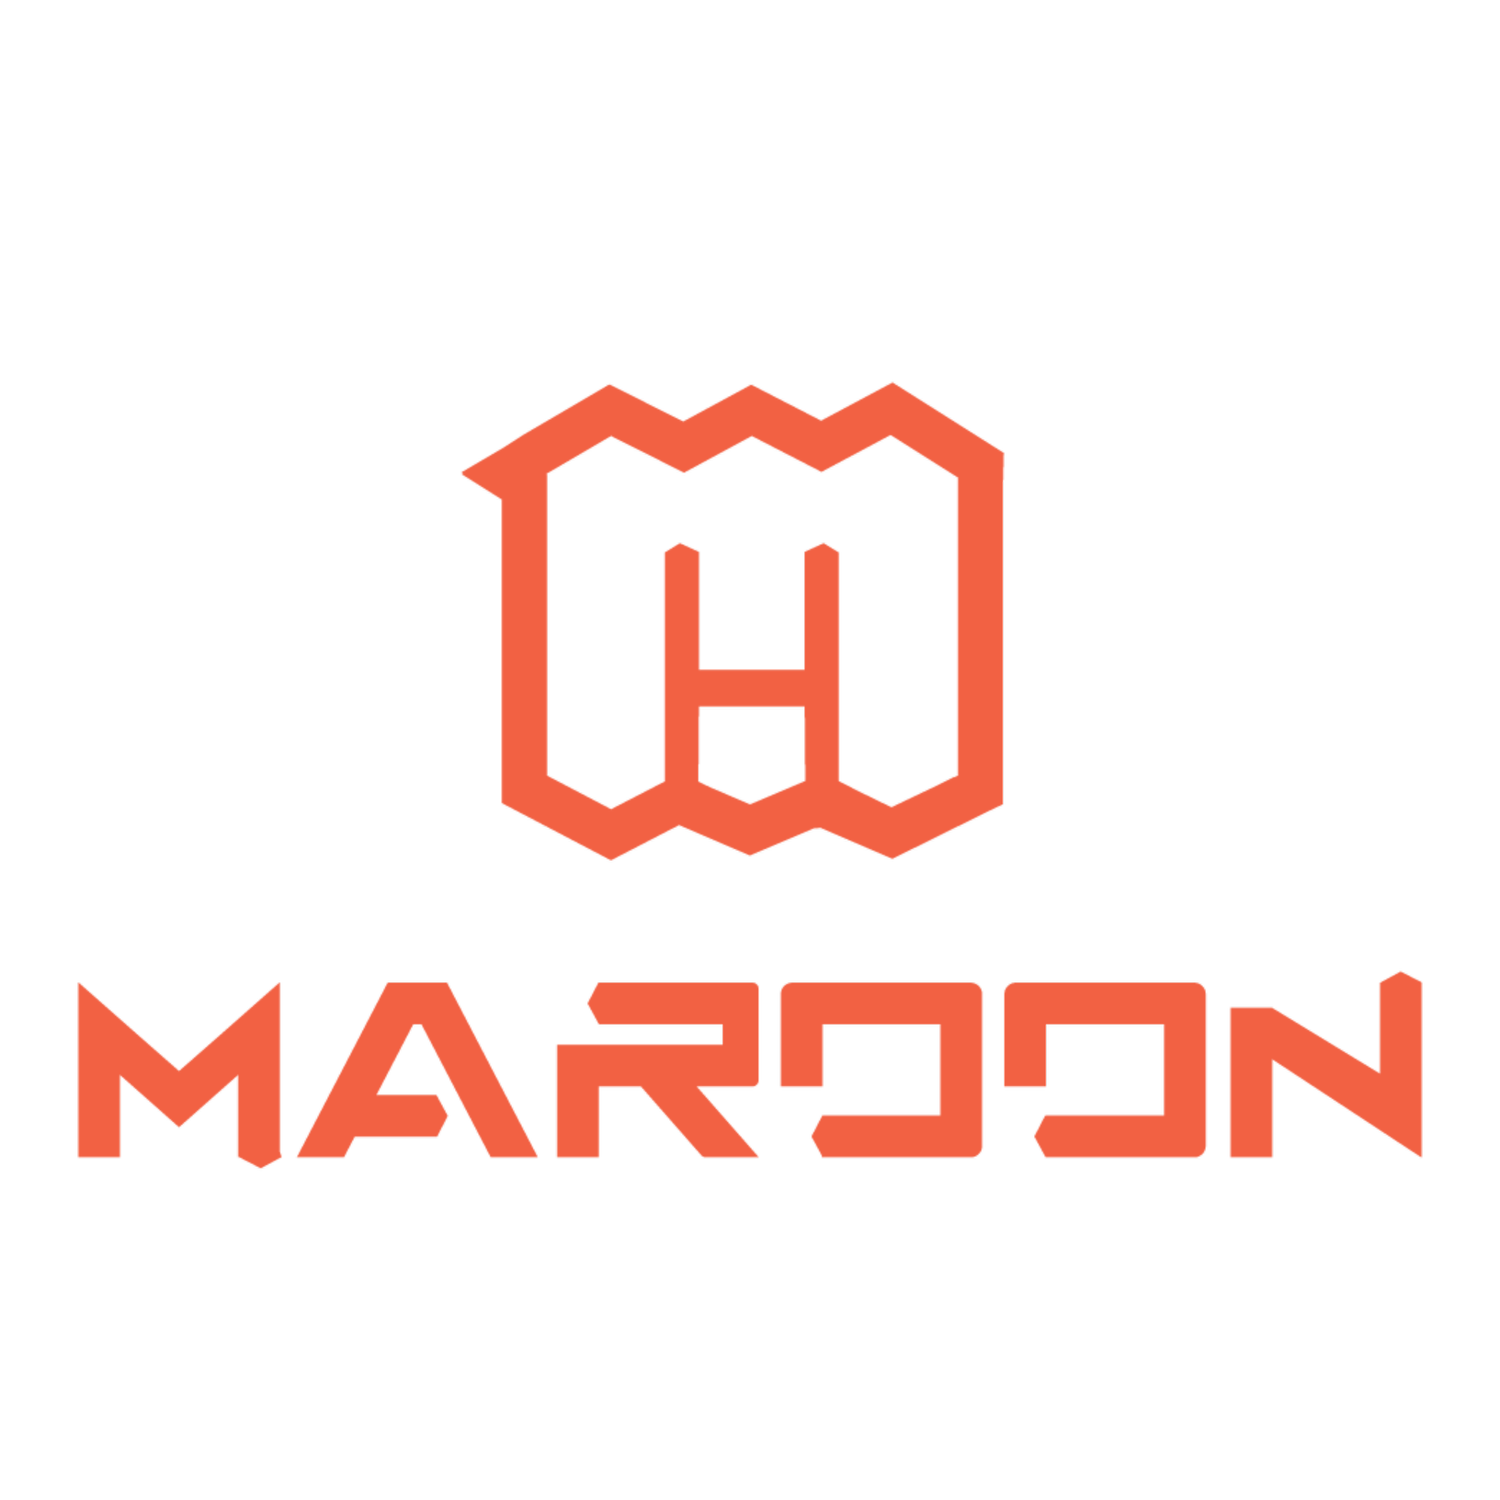 Be Maroon